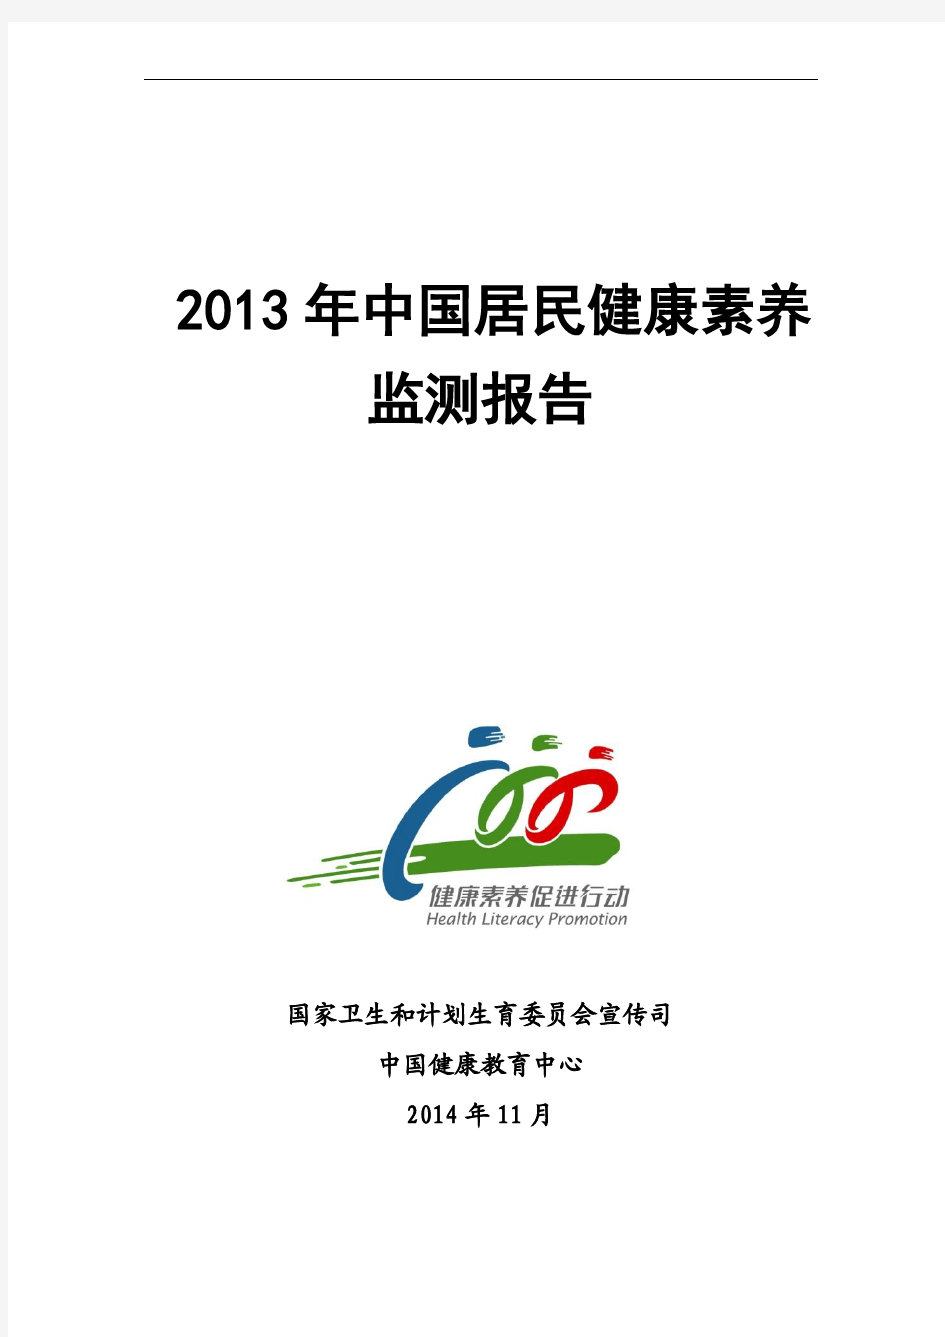 2013年中国居民健康素养监测报告